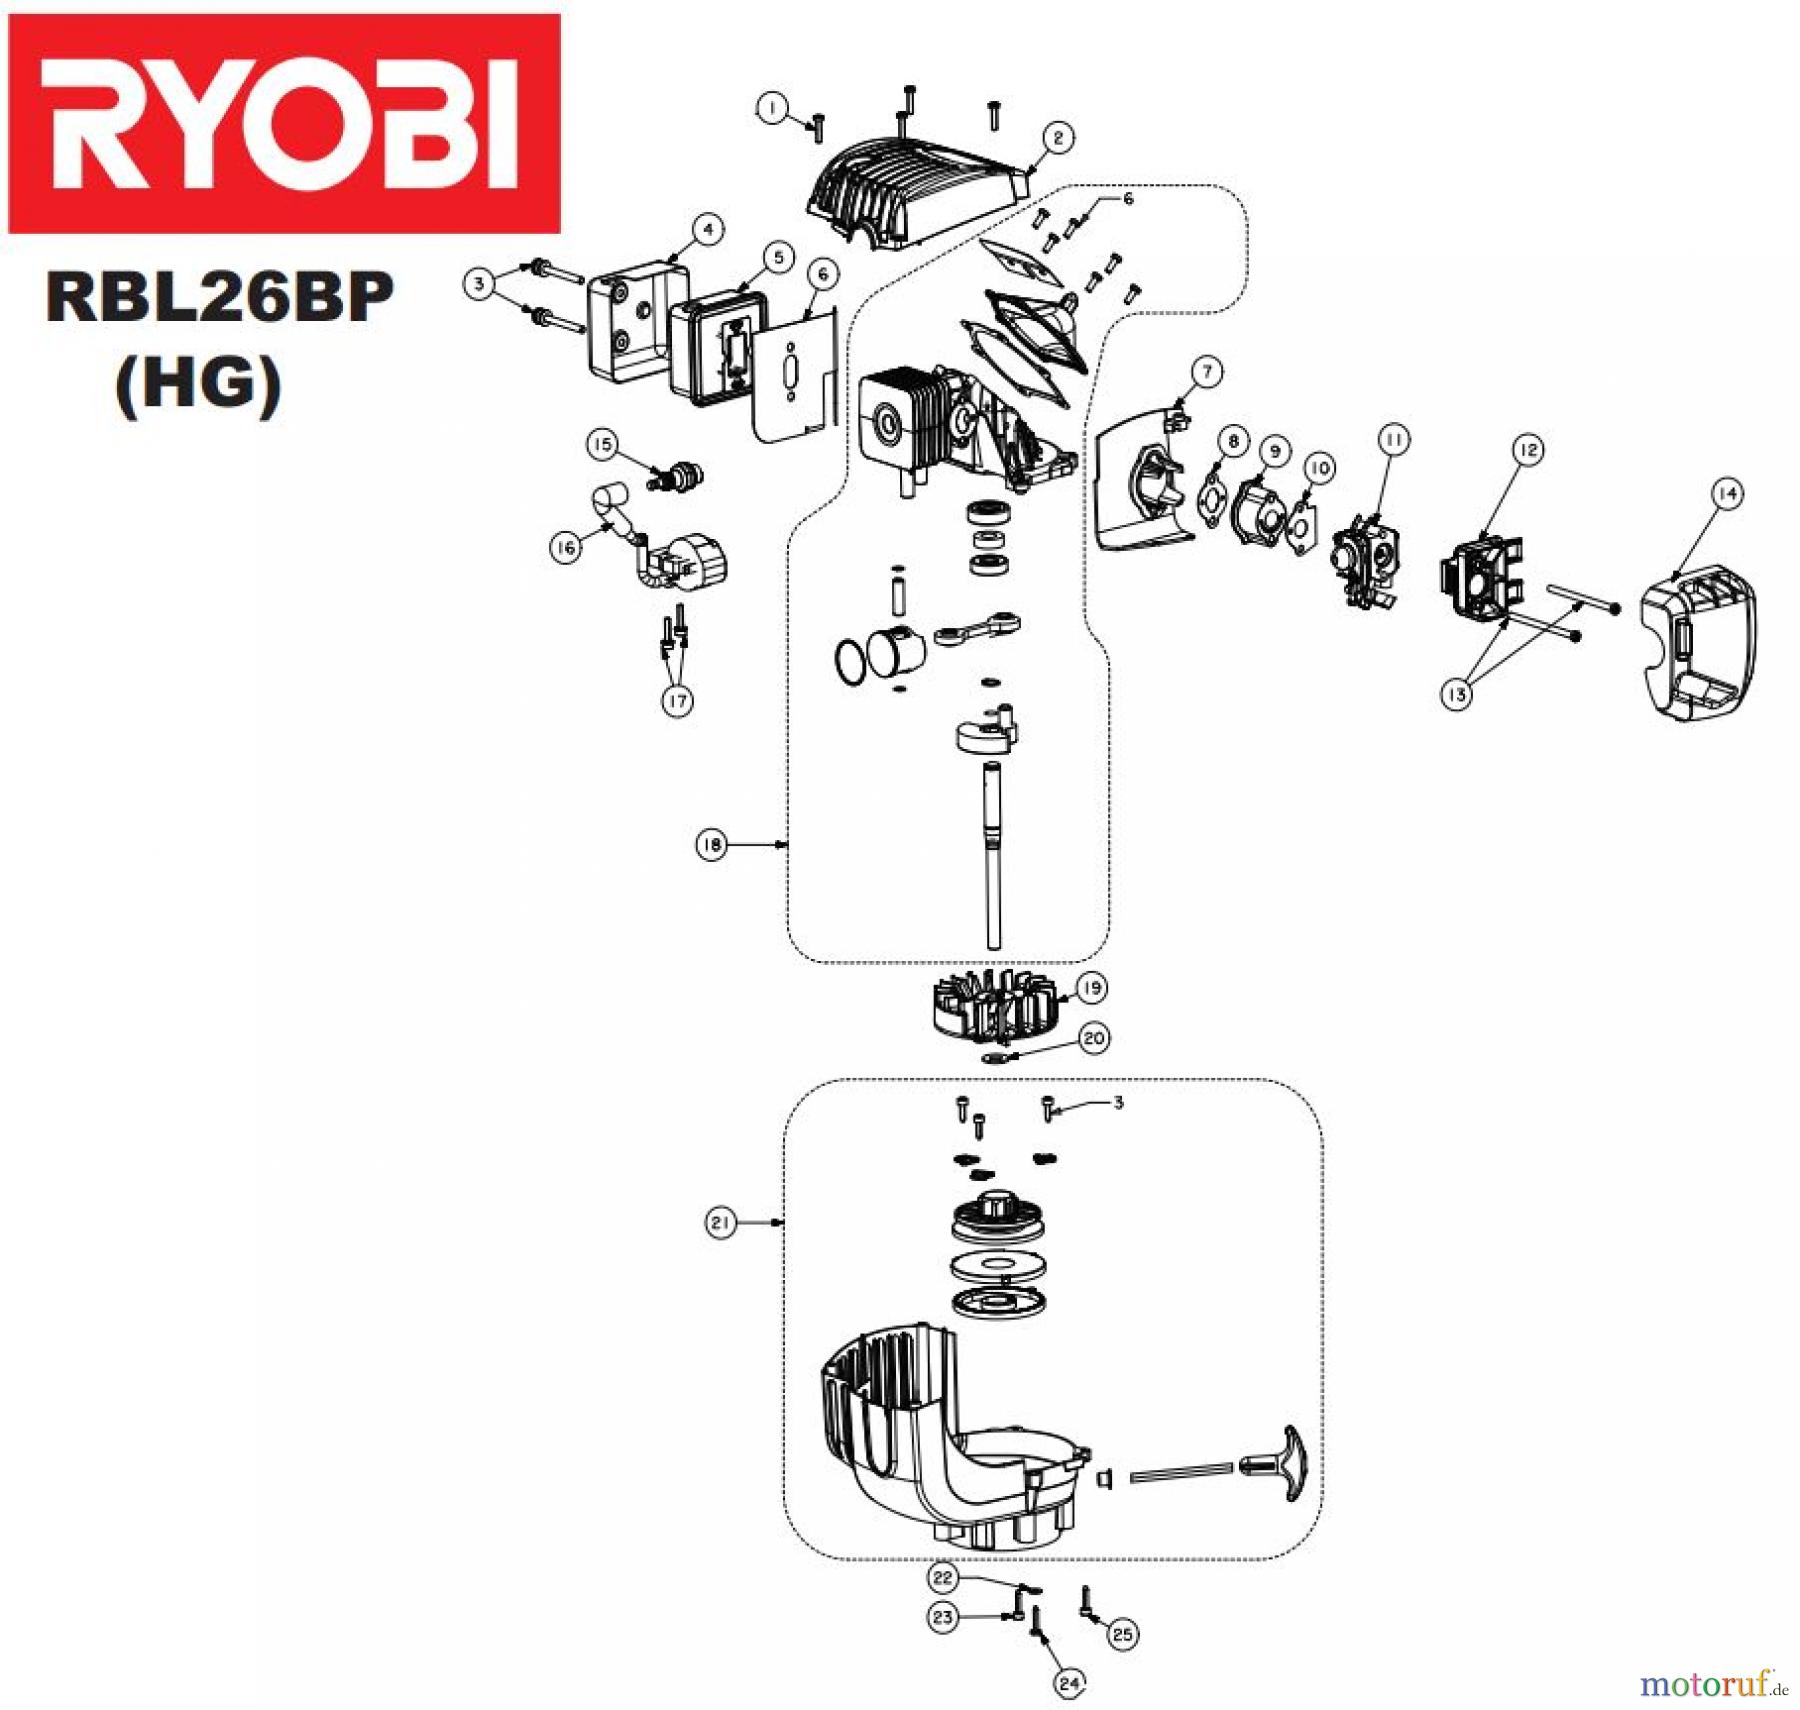  Ryobi Laubsauger und Laubbläser Blasgeräte RBL26BP 26 cm³ Rückentragbares Motorgebläse Seite 2